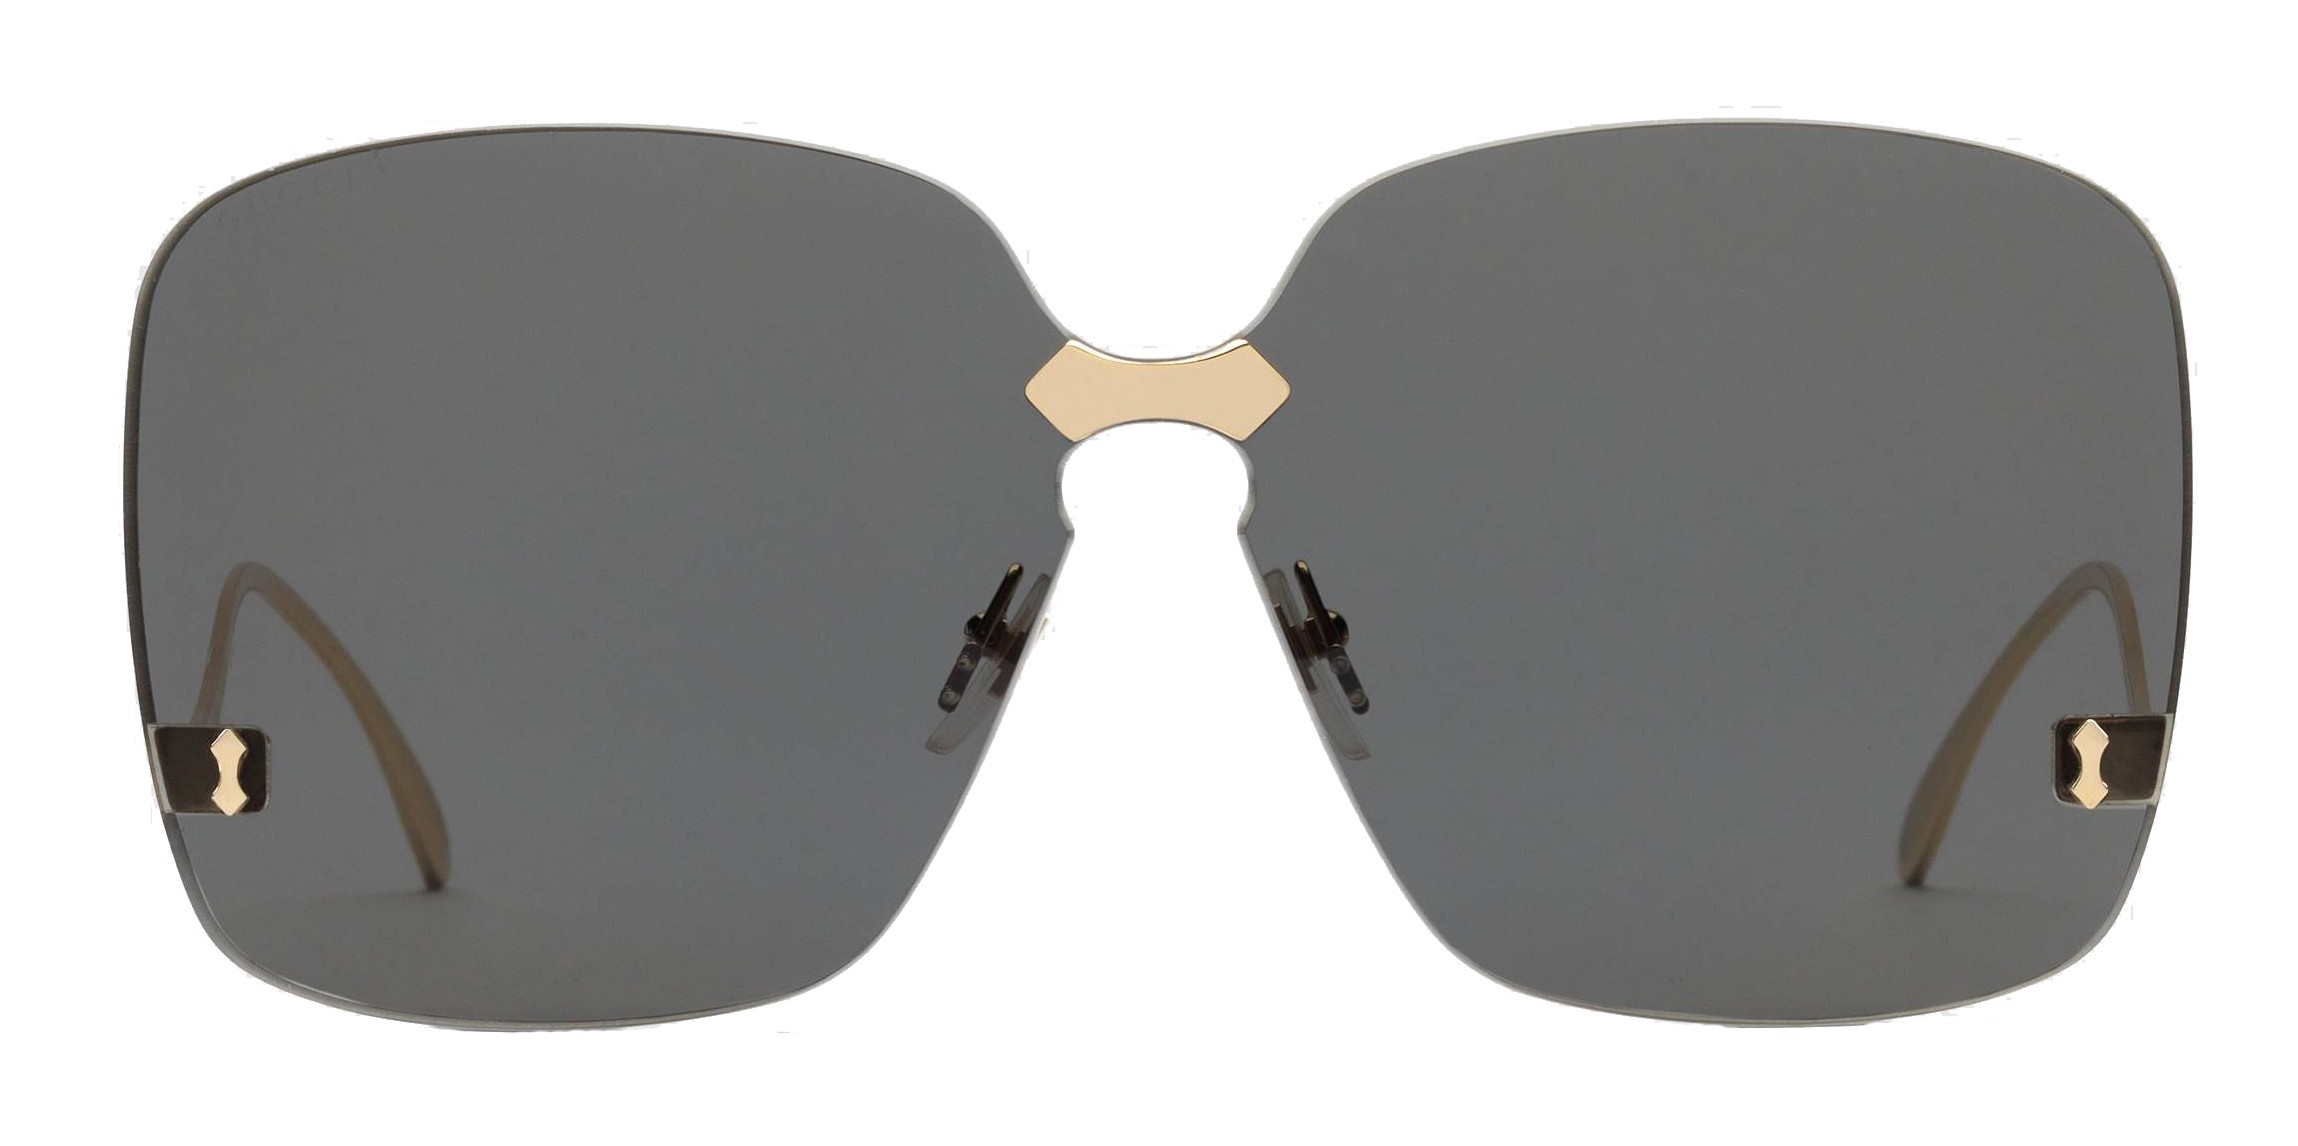 grey gucci sunglasses